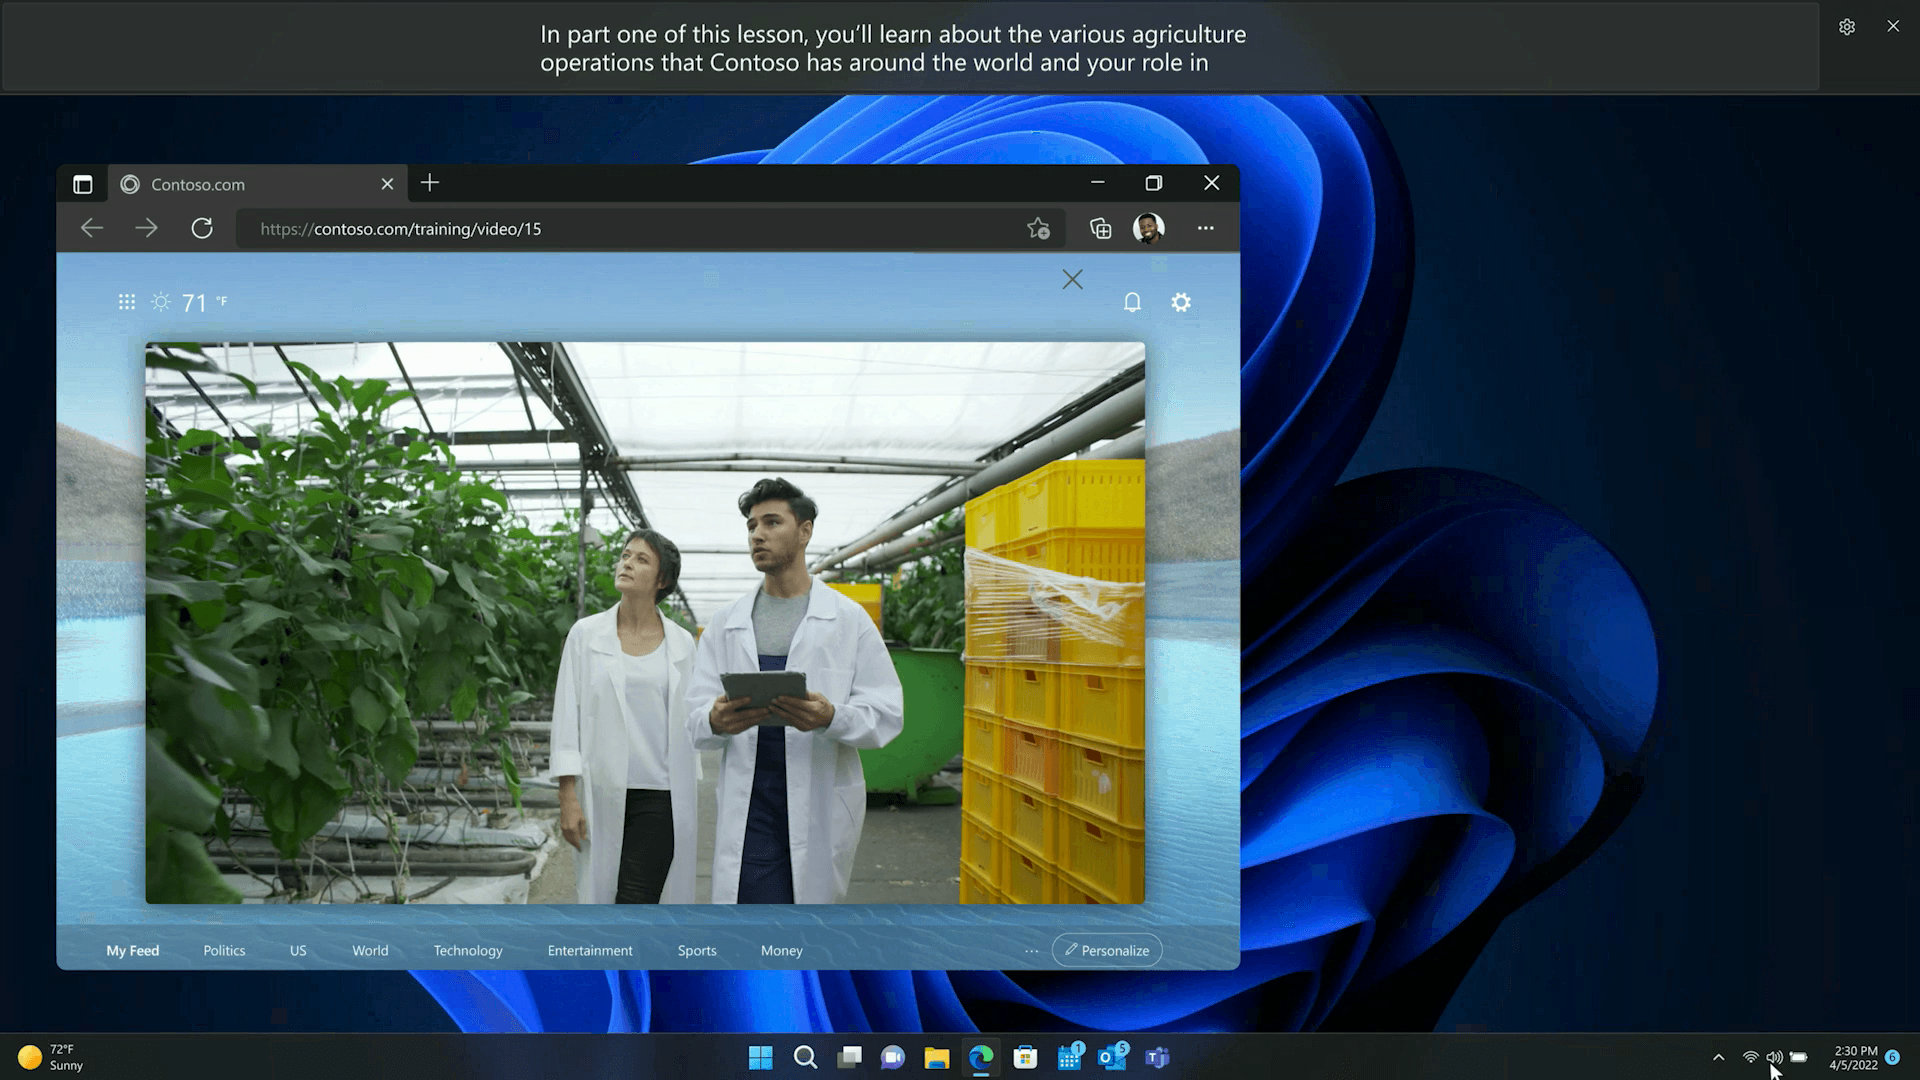 Microsoft Windows 11 Pro Retail - Agencia de desarrollo Web - EN UN TOQUE